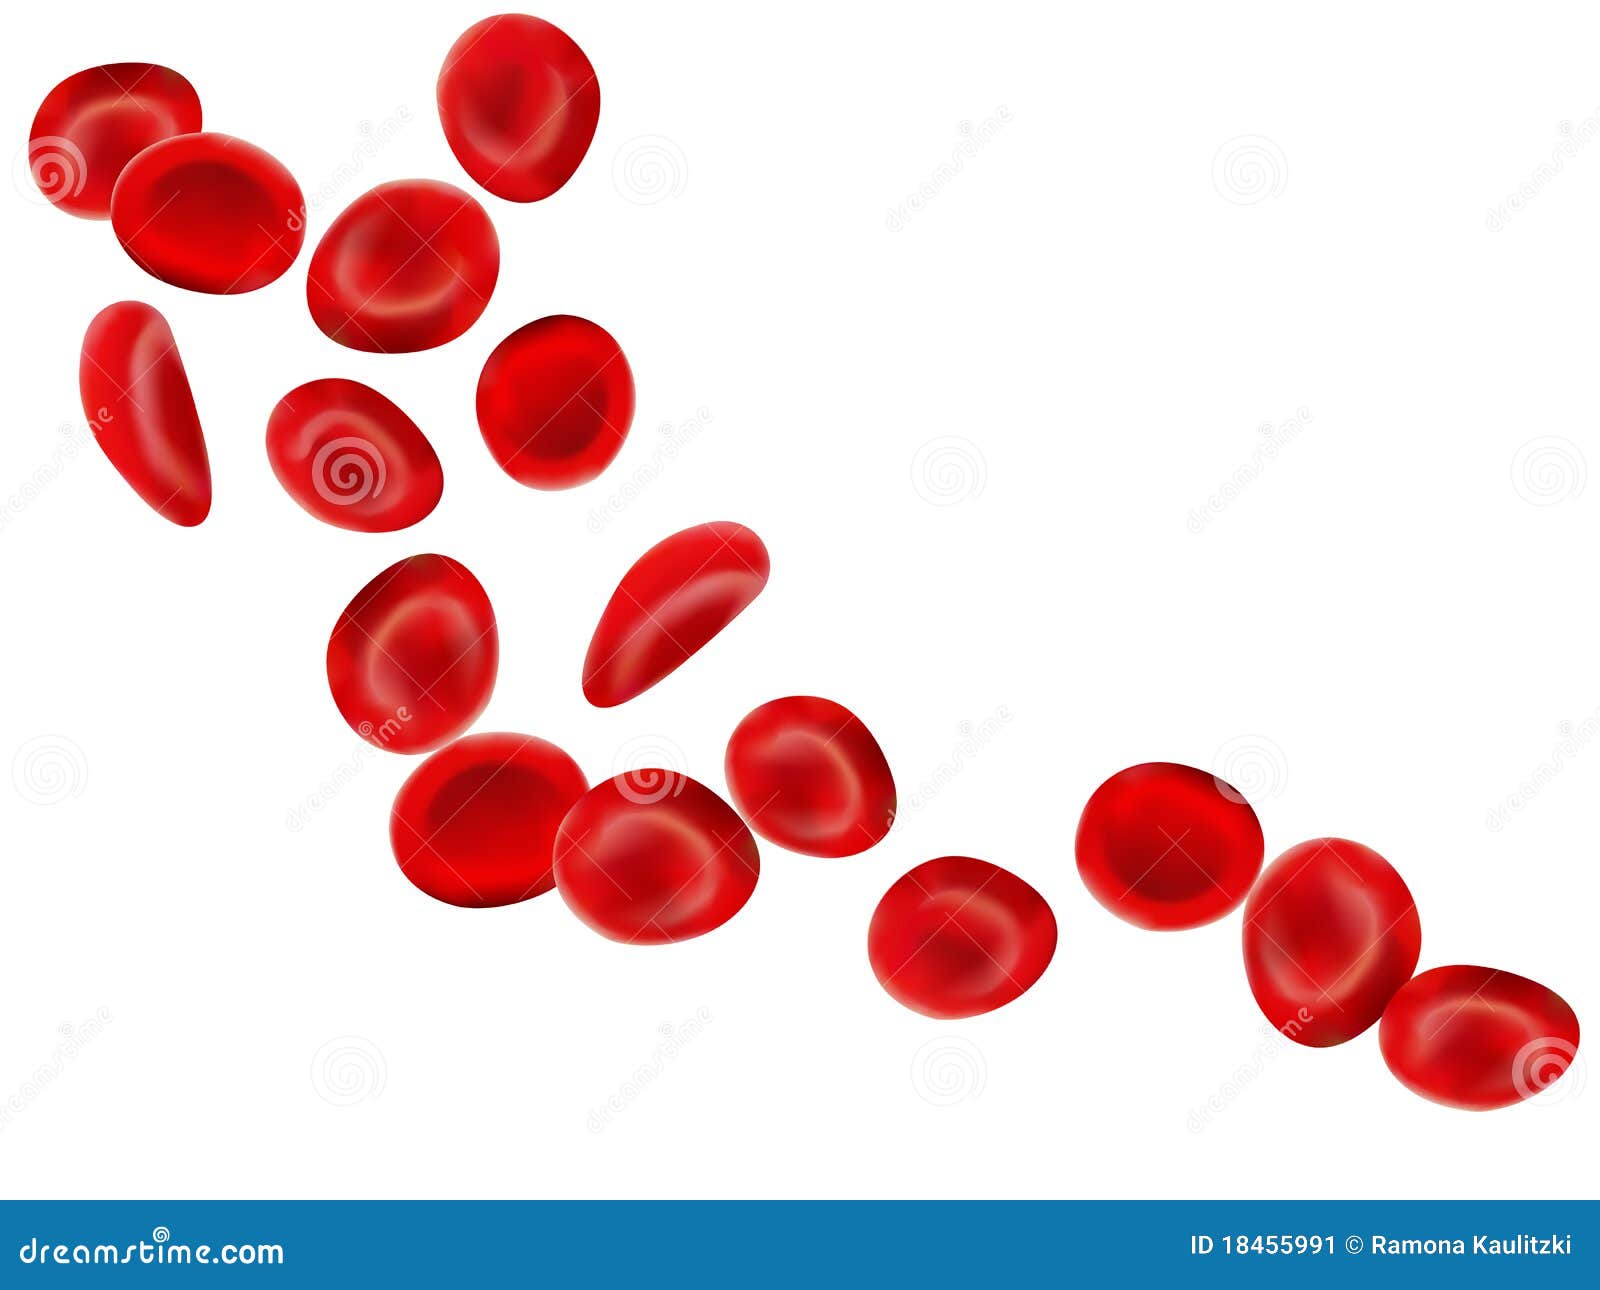 blood platelet clip art - photo #10